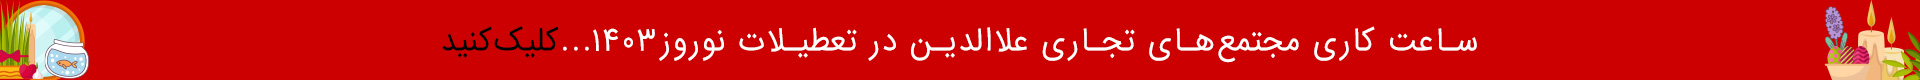 Alaedin hours in noroz 1403-desktop banner